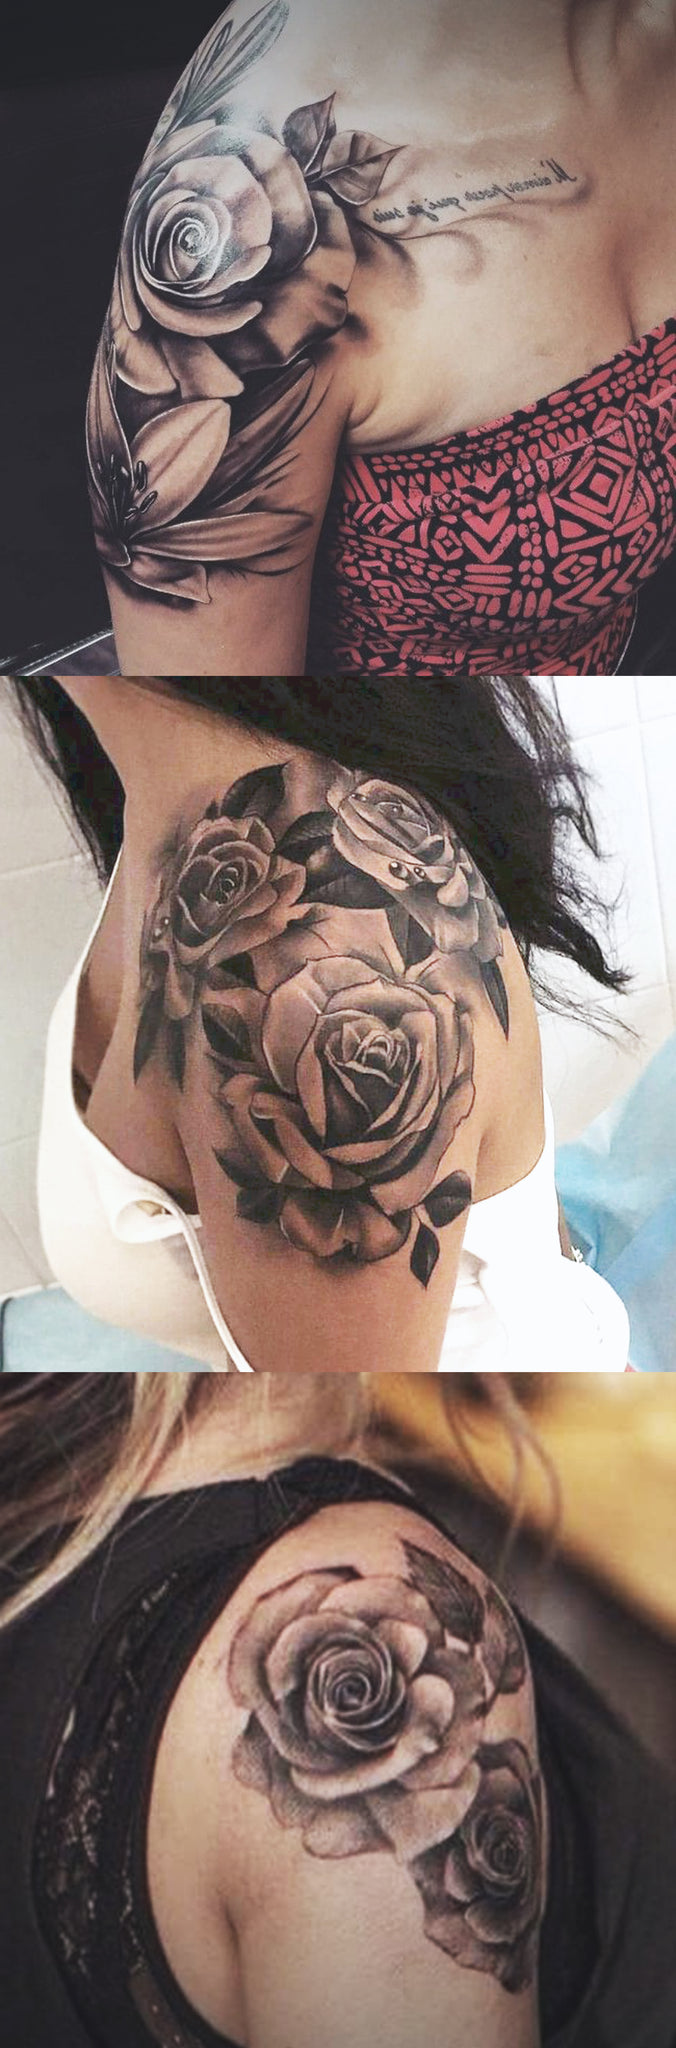 12 Rose Flowers Tattoos On Shoulder